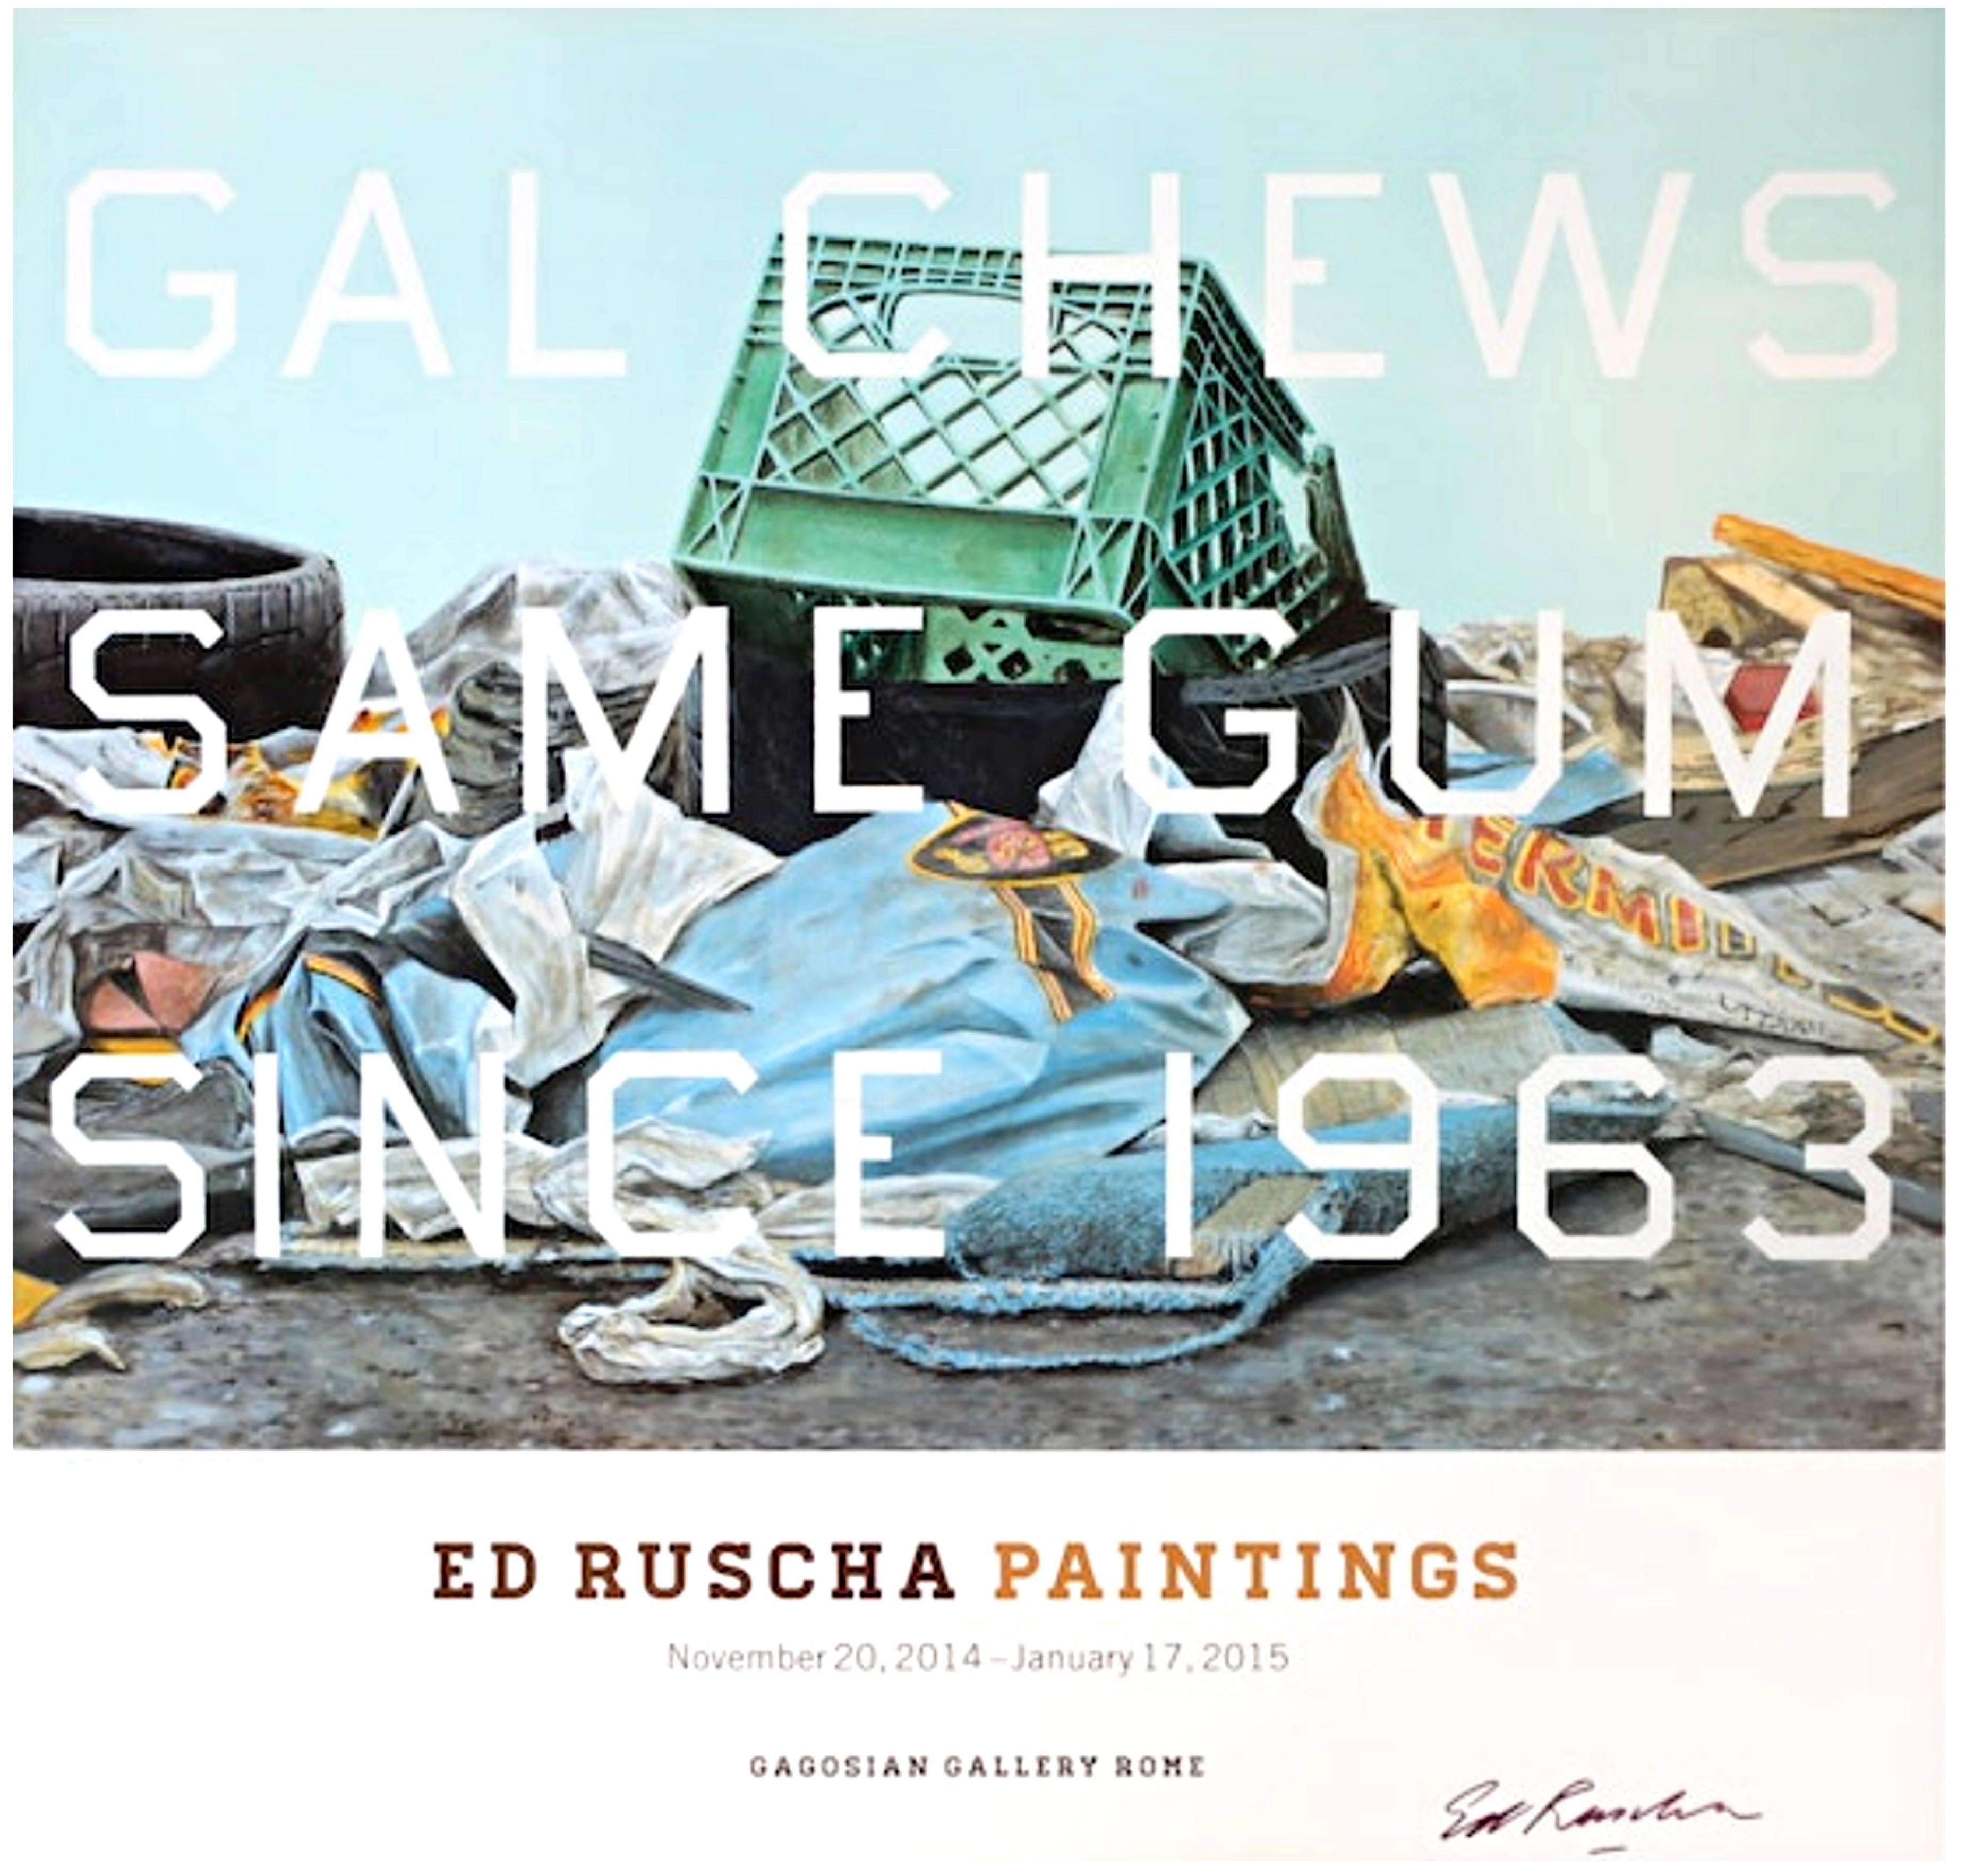 Gal Chews Same Gum seit 1965, Offset-Lithographieplakat, handsigniert von Ed Ruscha